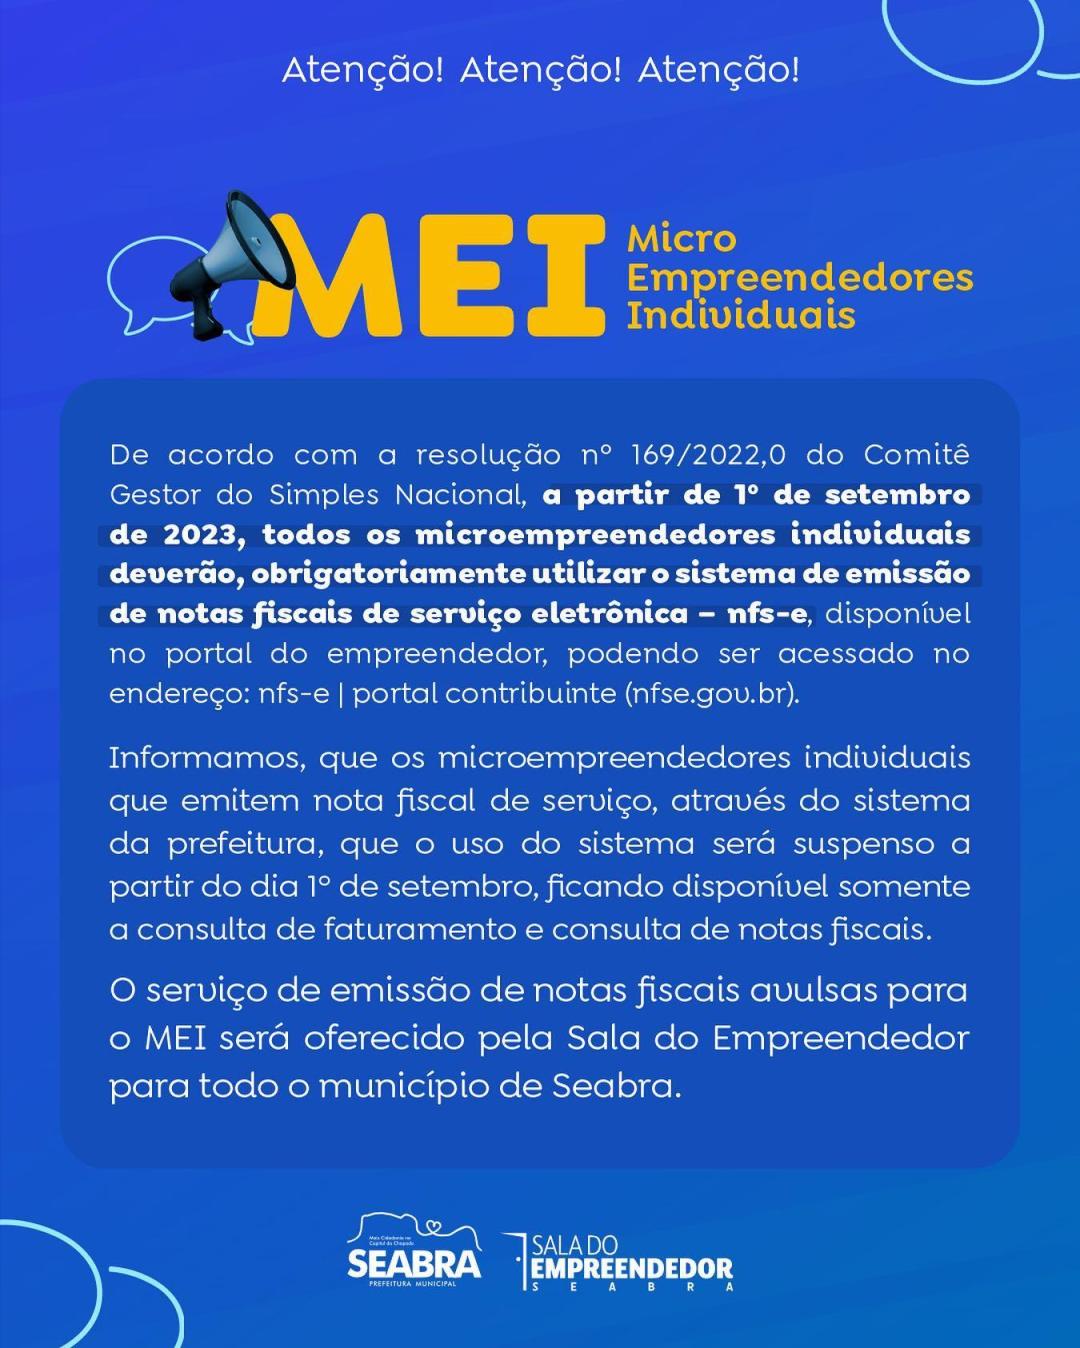 Atenção! MEI - Micro Empreendedores Individuais